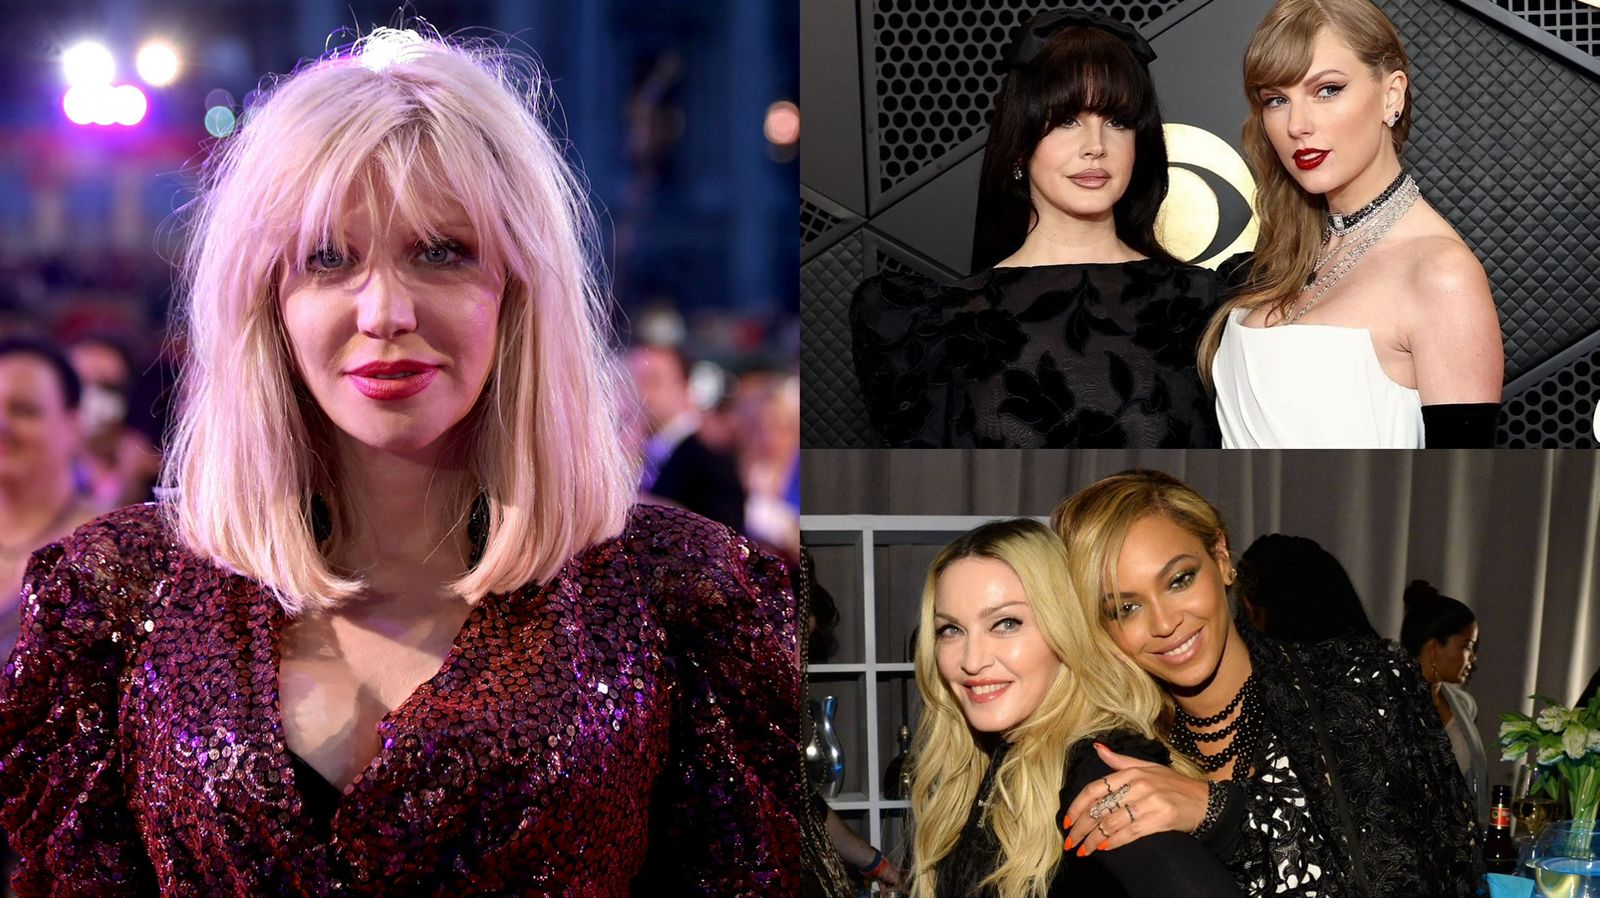 Ao promover série que celebra mulheres na música, Courtney Love detona algumas delas